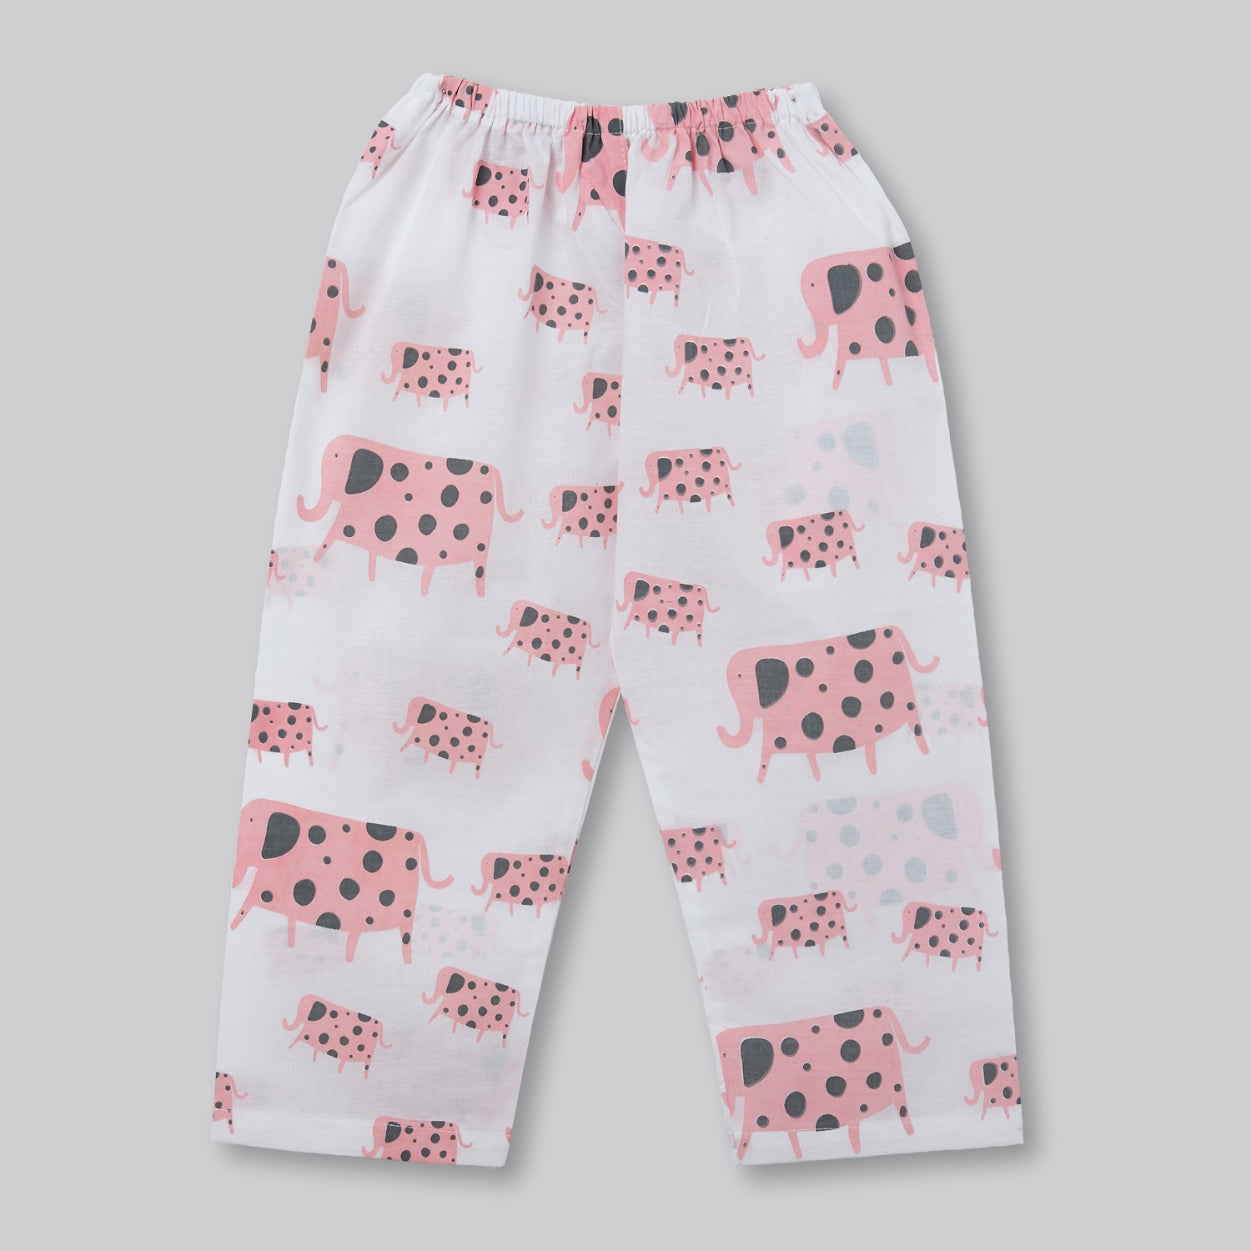 A Parade of Elephants - Kurta Pyjama Set in Pink and Grey